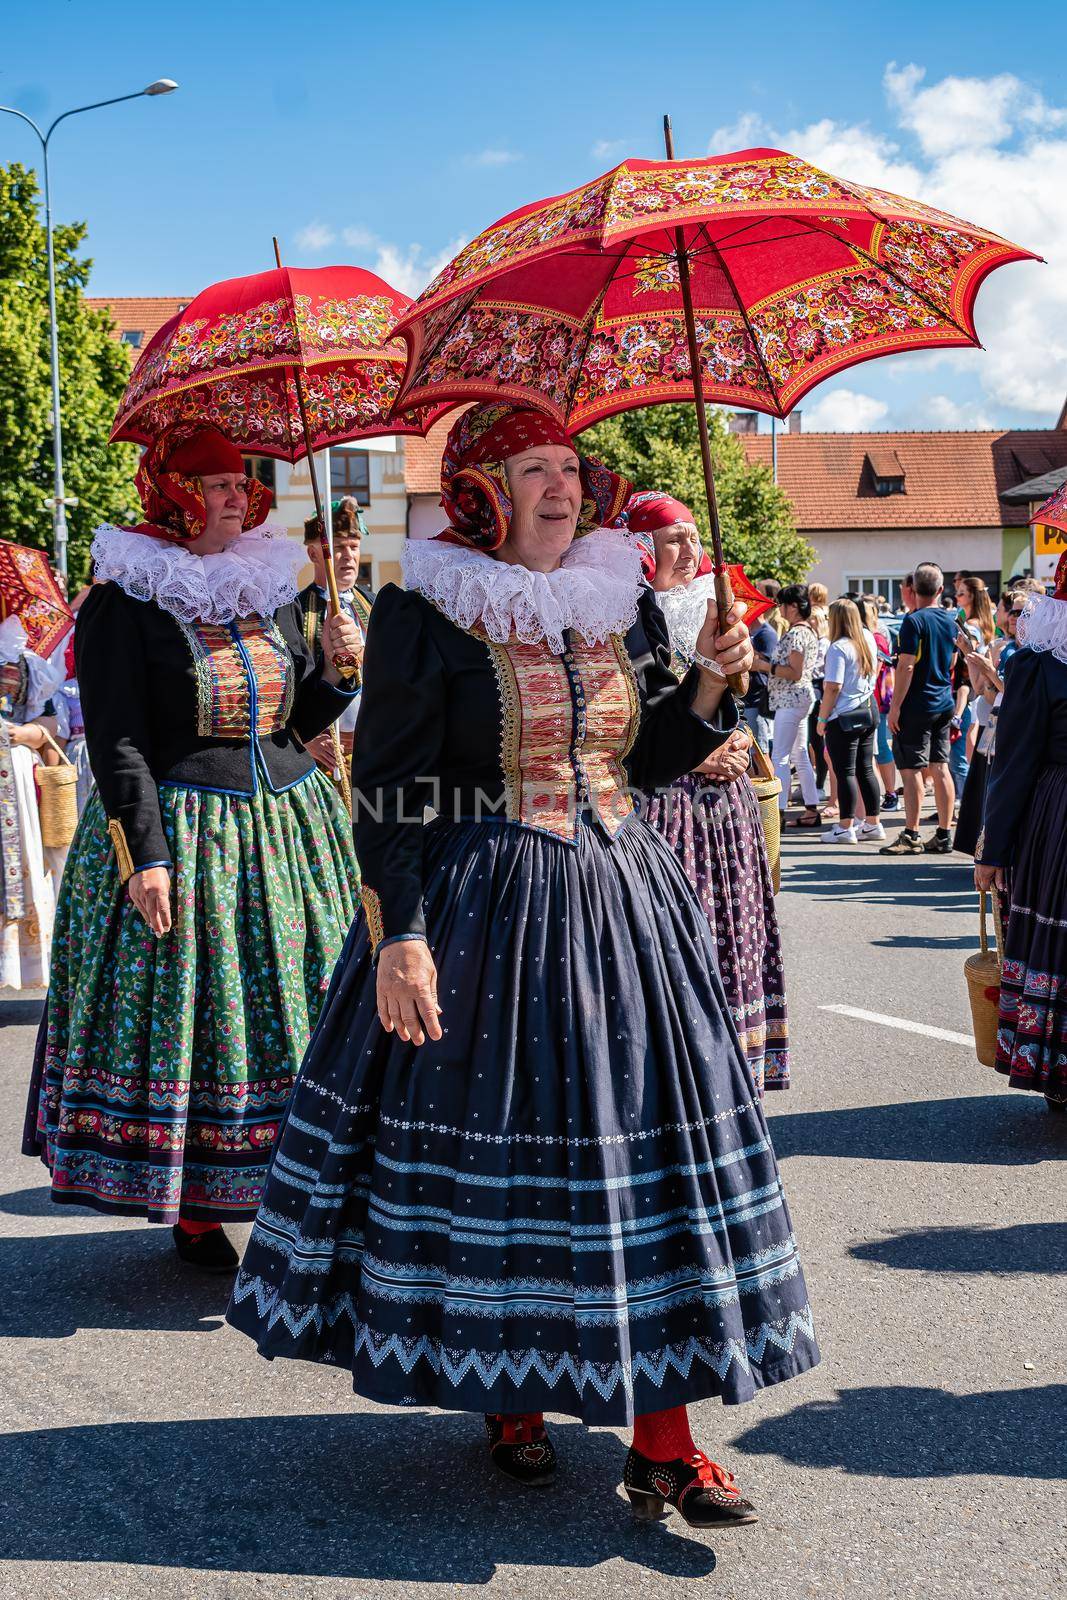 Women in folk costume Hanacka in the procession in Straznice by rostik924